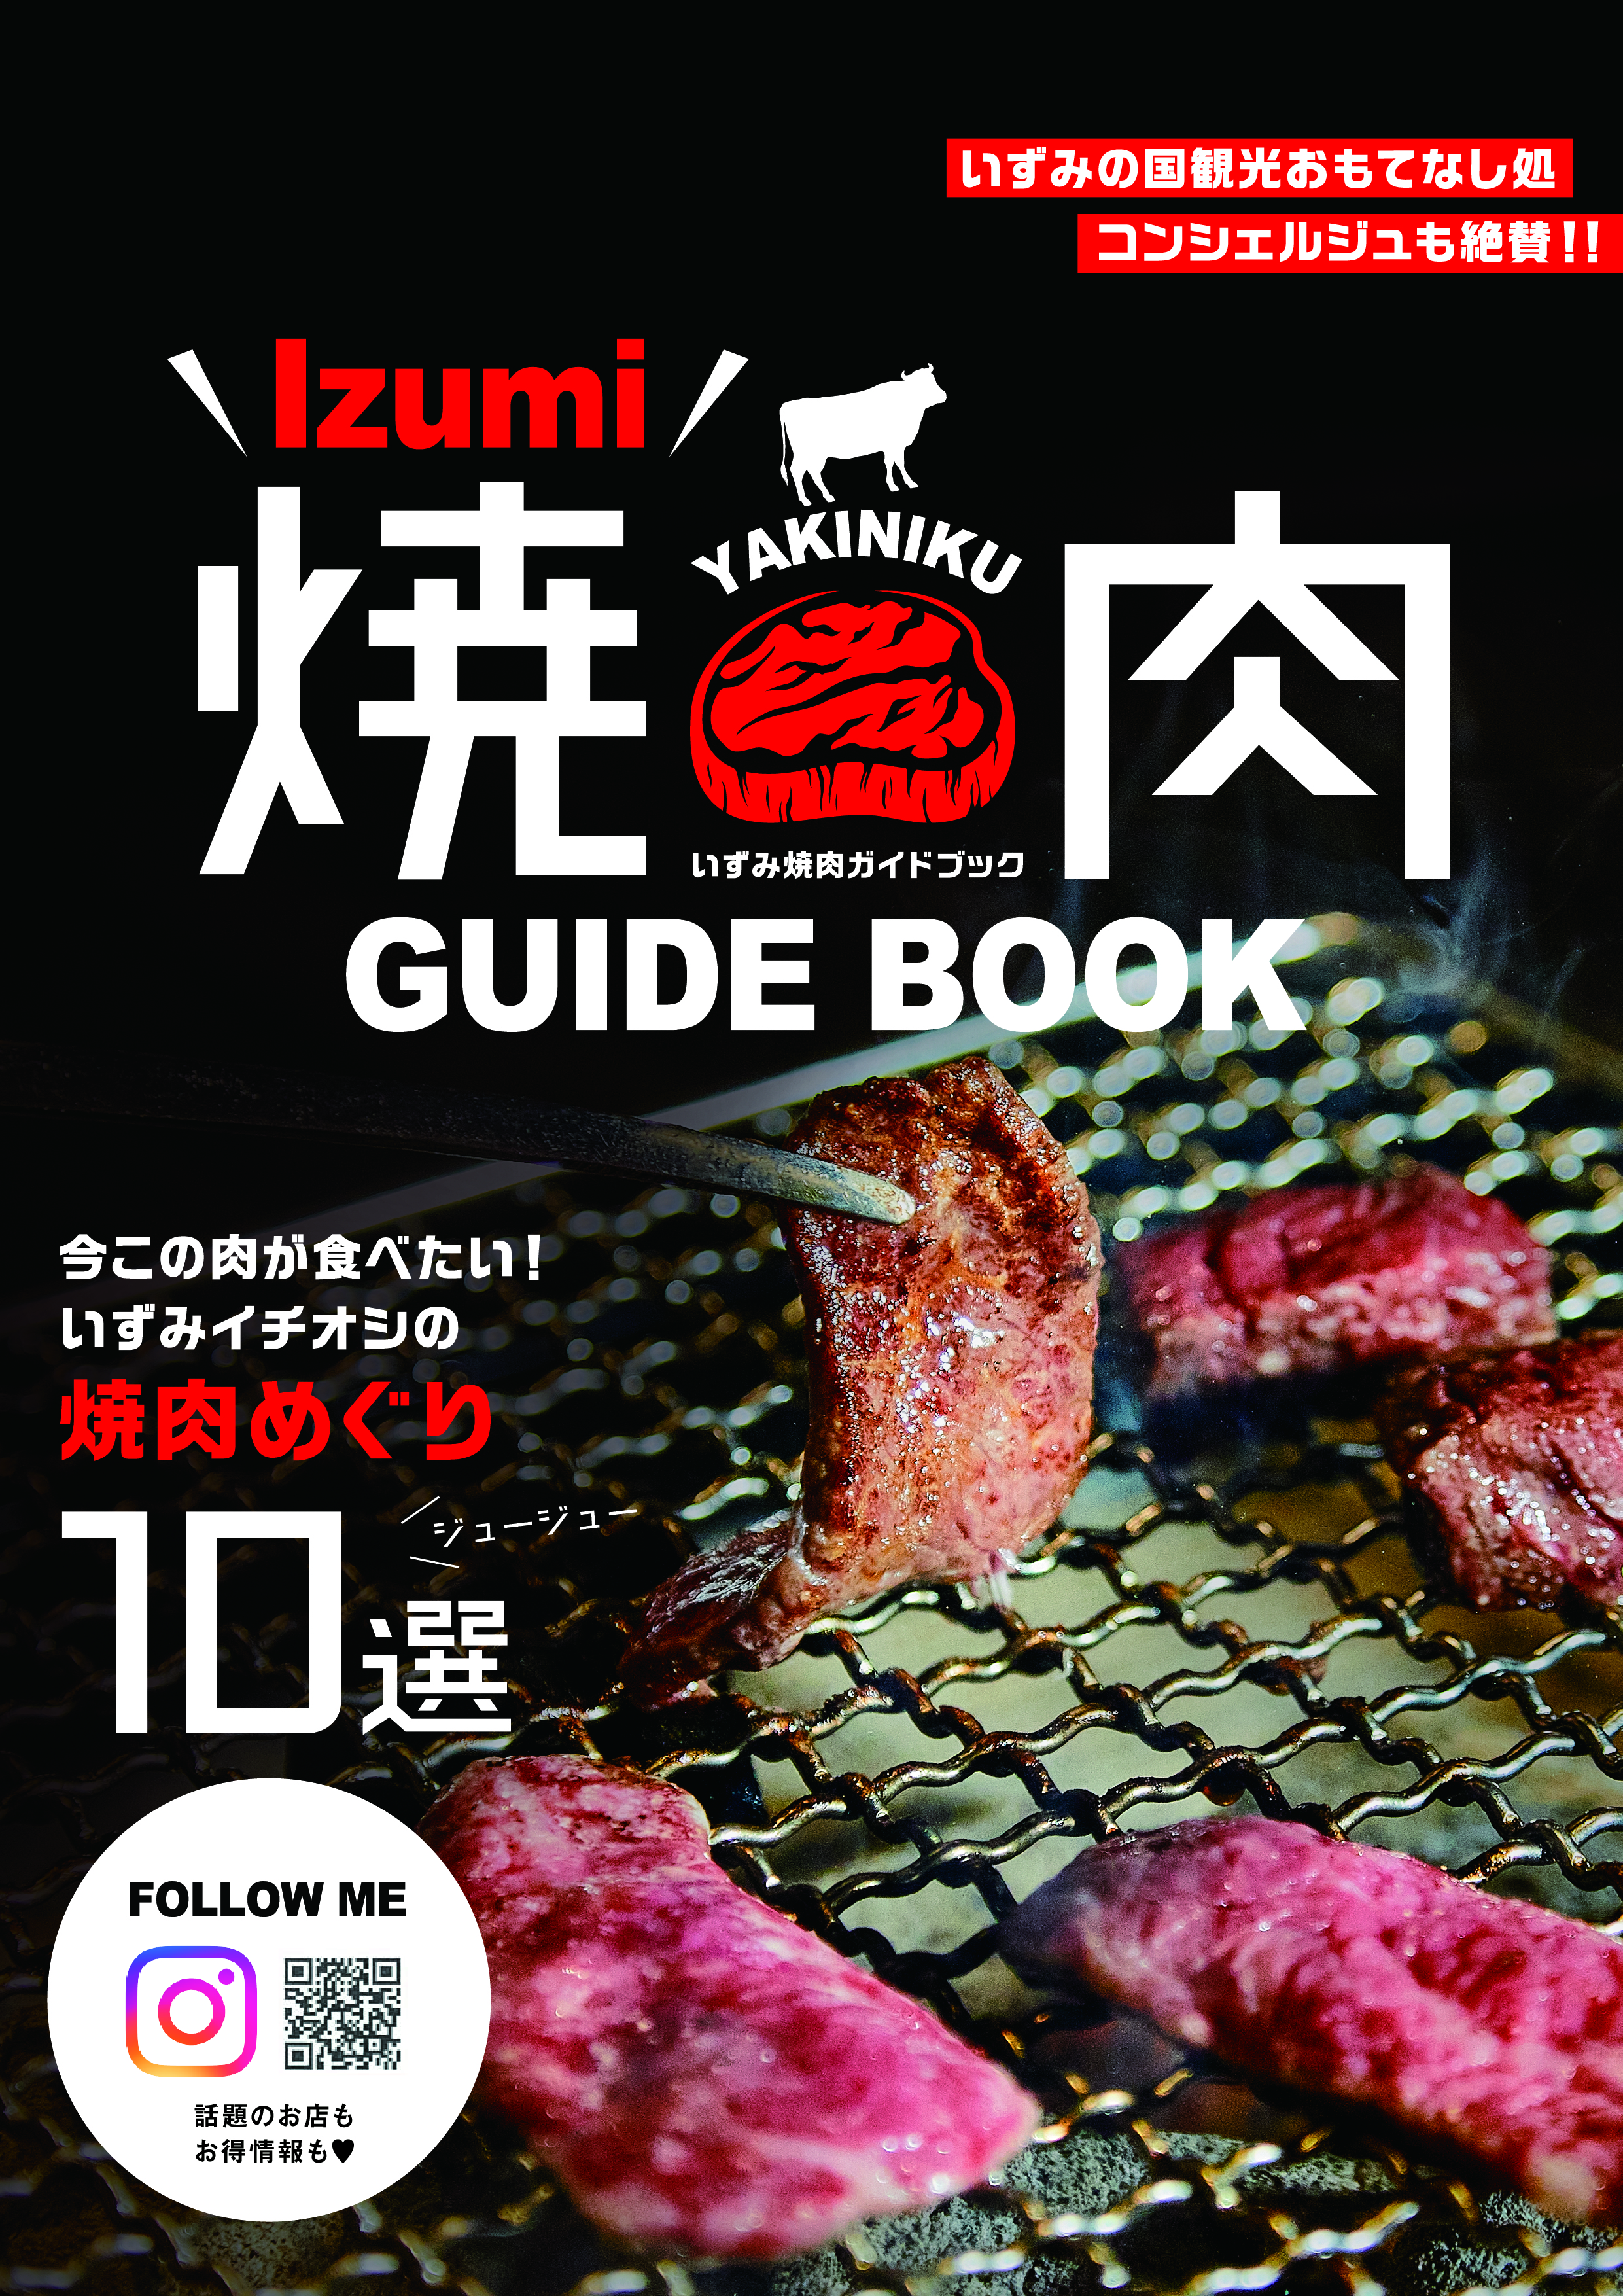 ■Izumi 焼肉 GUIDEBOOK